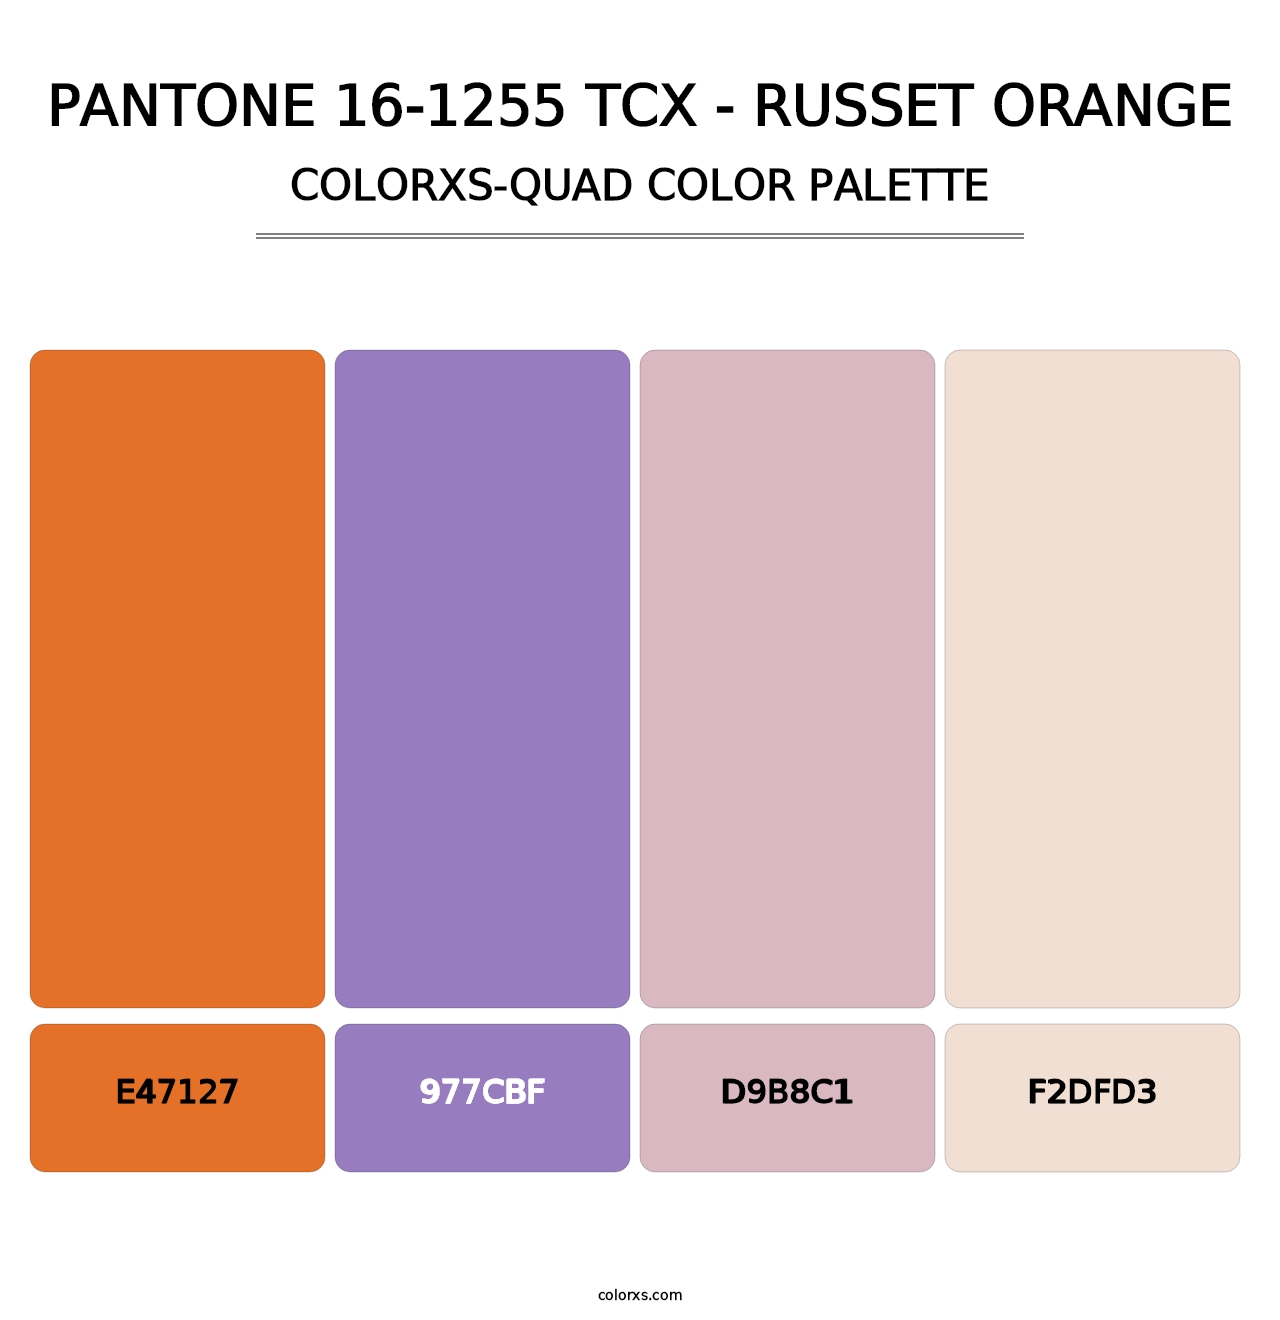 PANTONE 16-1255 TCX - Russet Orange - Colorxs Quad Palette